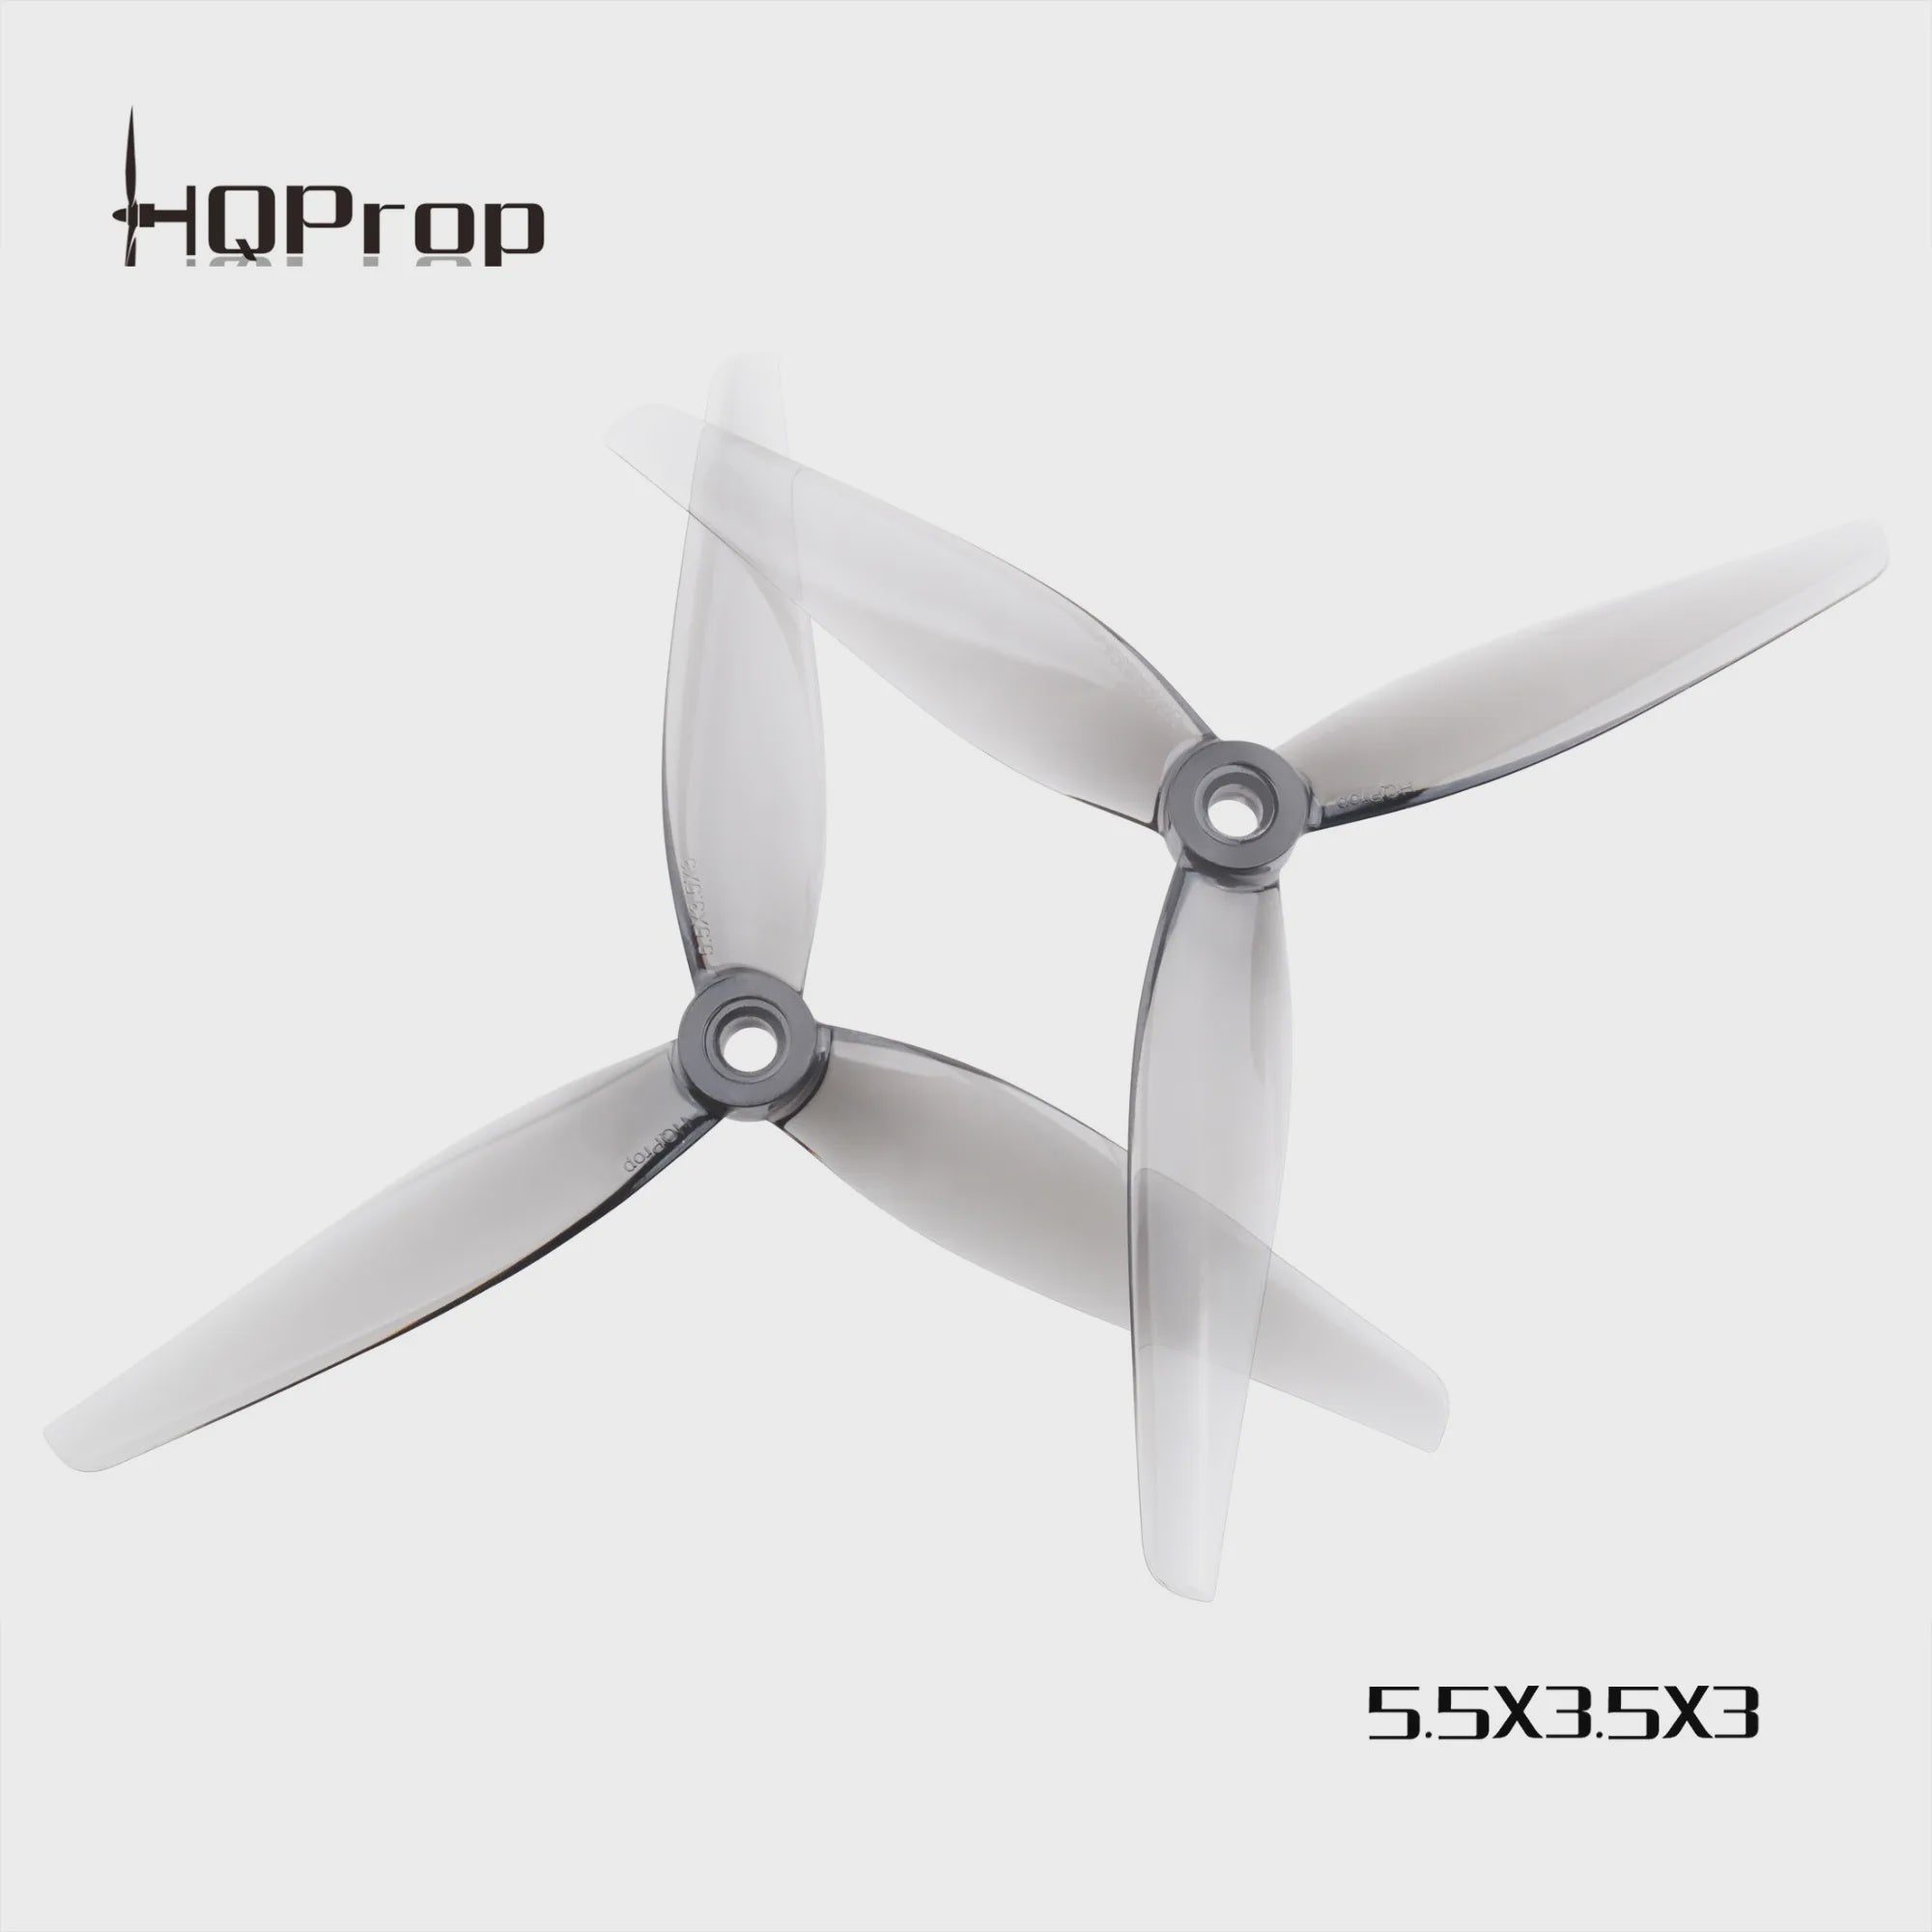 HQProp 5.5X3.5X3 V2 Propellers (2CW+2CCW)